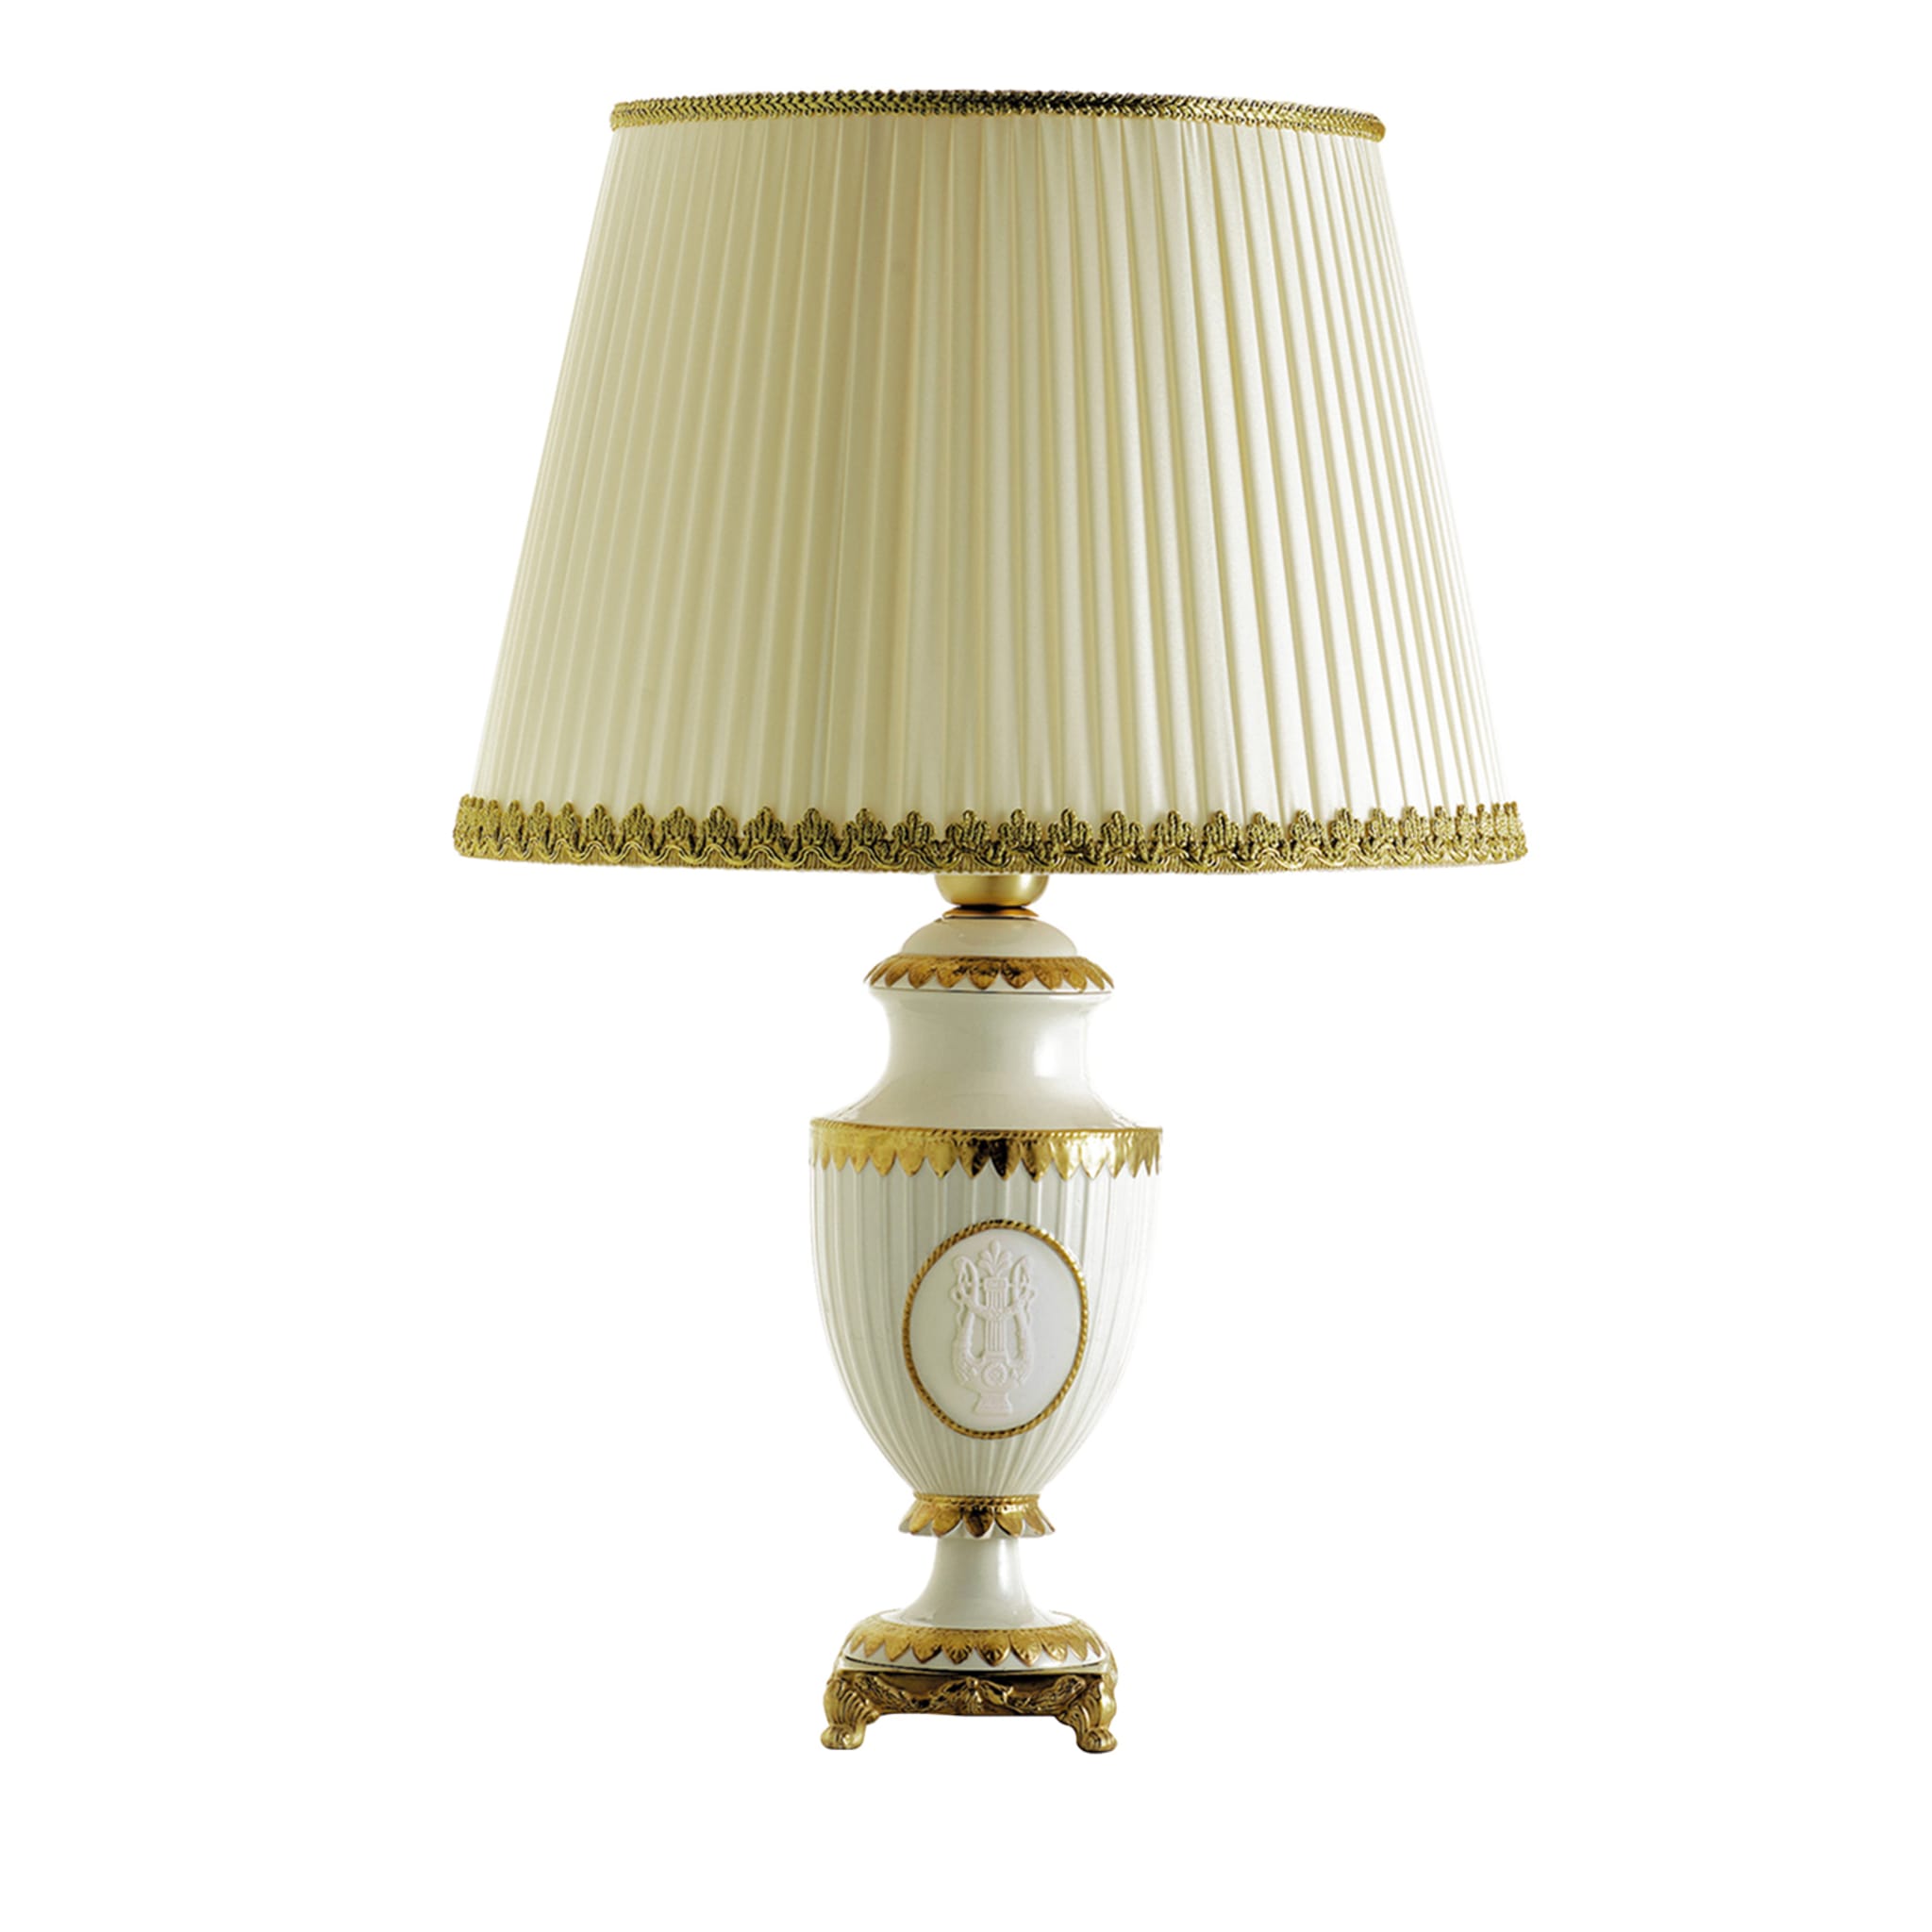 Petite lampe de table Napoléon II or et blanc - Vue principale